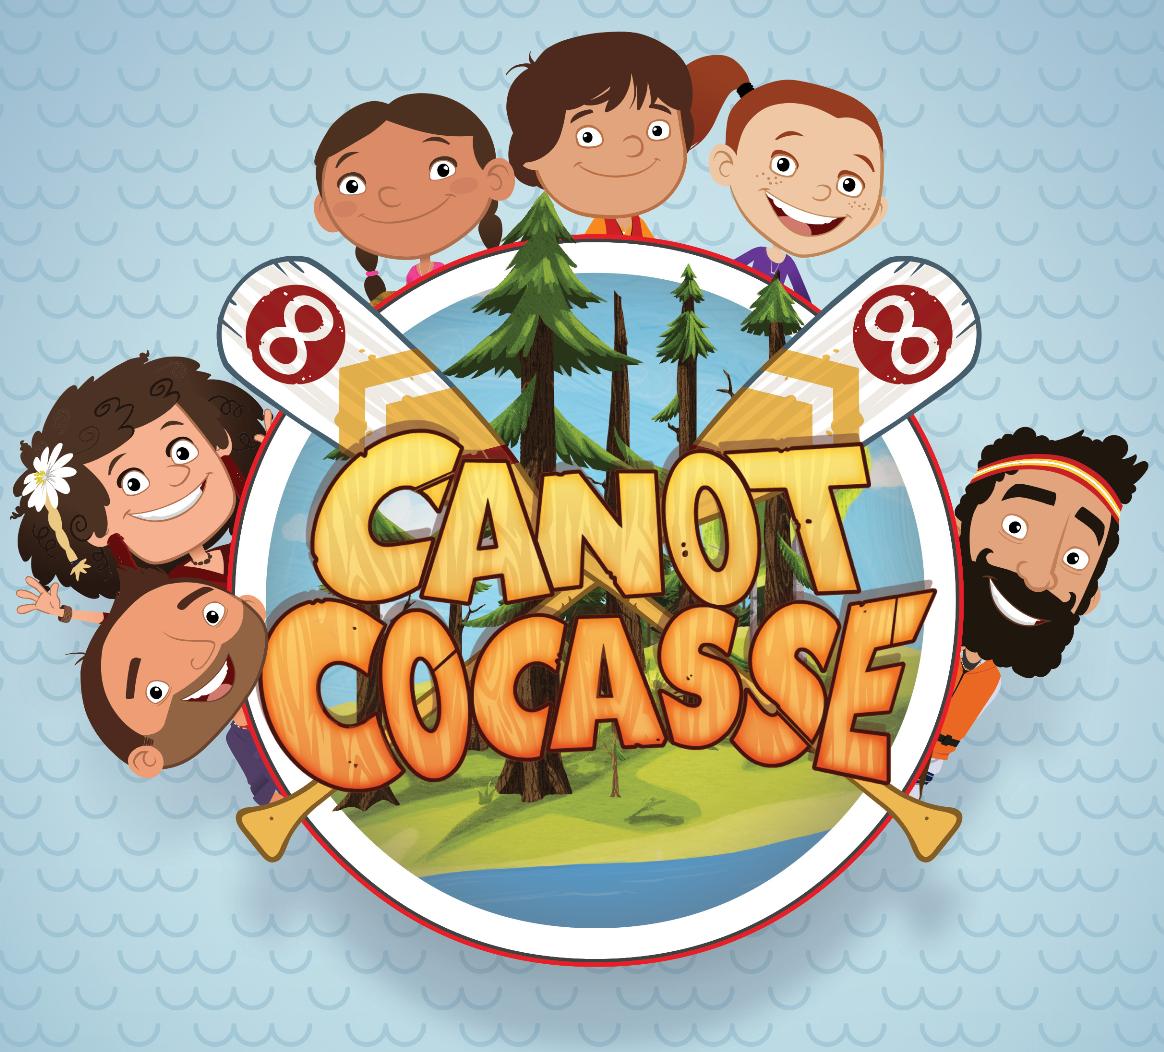 TV ratings for Canot Cocasse in Australia. APTN TV series